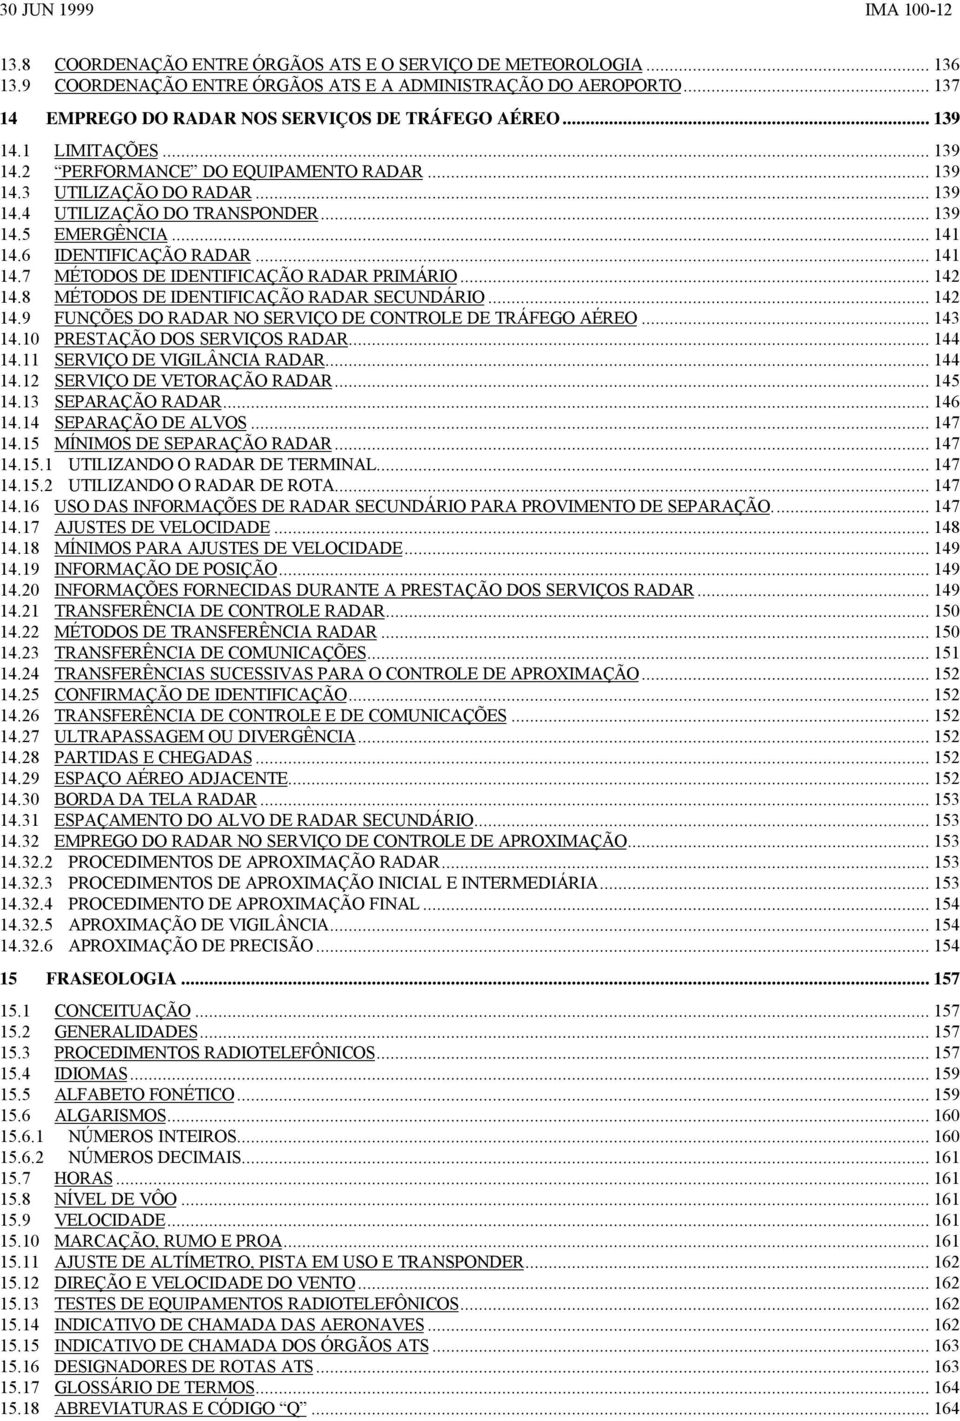 6 IDENTIFICAÇÃO RADAR... 141 14.7 MÉTODOS DE IDENTIFICAÇÃO RADAR PRIMÁRIO... 142 14.8 MÉTODOS DE IDENTIFICAÇÃO RADAR SECUNDÁRIO... 142 14.9 FUNÇÕES DO RADAR NO SERVIÇO DE CONTROLE DE TRÁFEGO AÉREO.